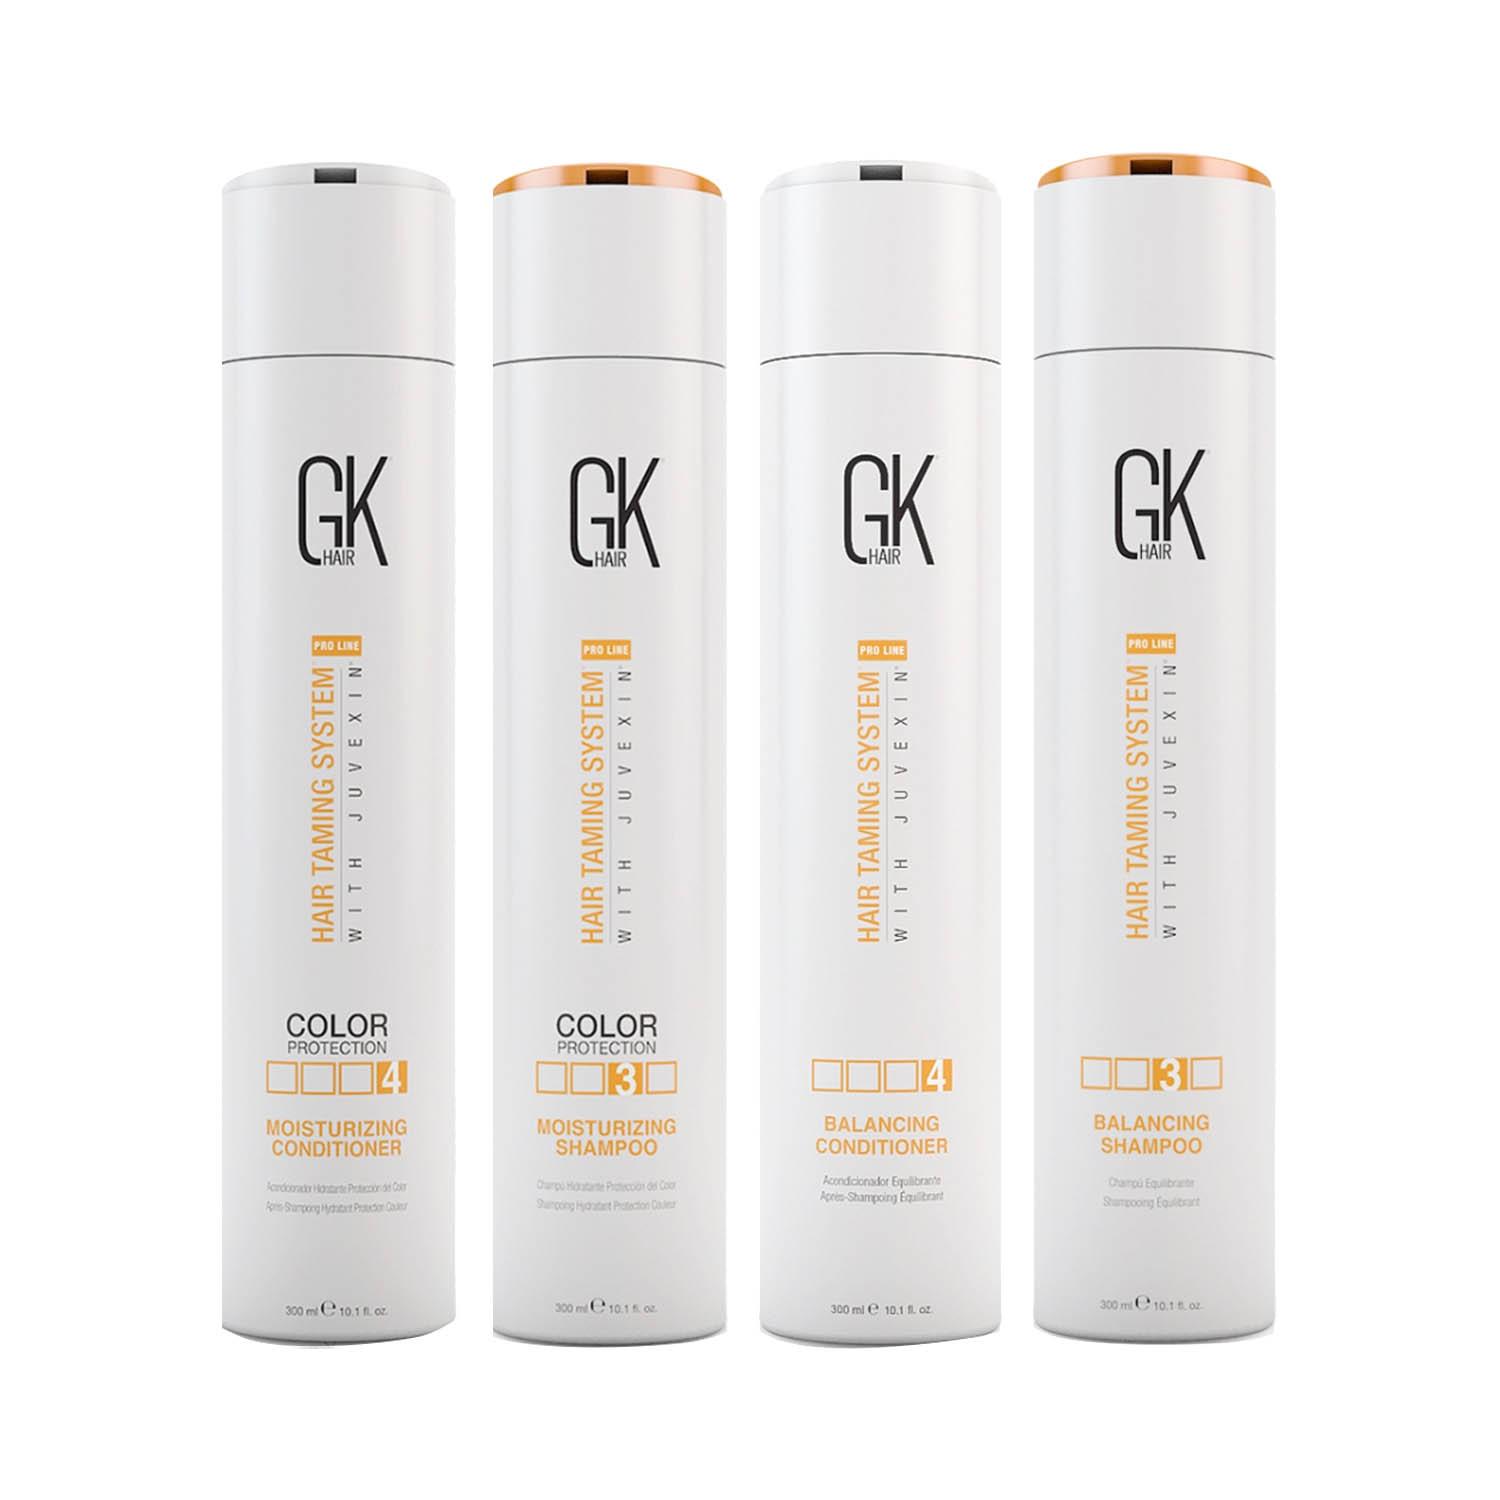 GK Hair | GK Hair Moisturizing Shampoo and Conditioner 300ml with Balancing Shampoo and Conditioner 300ml